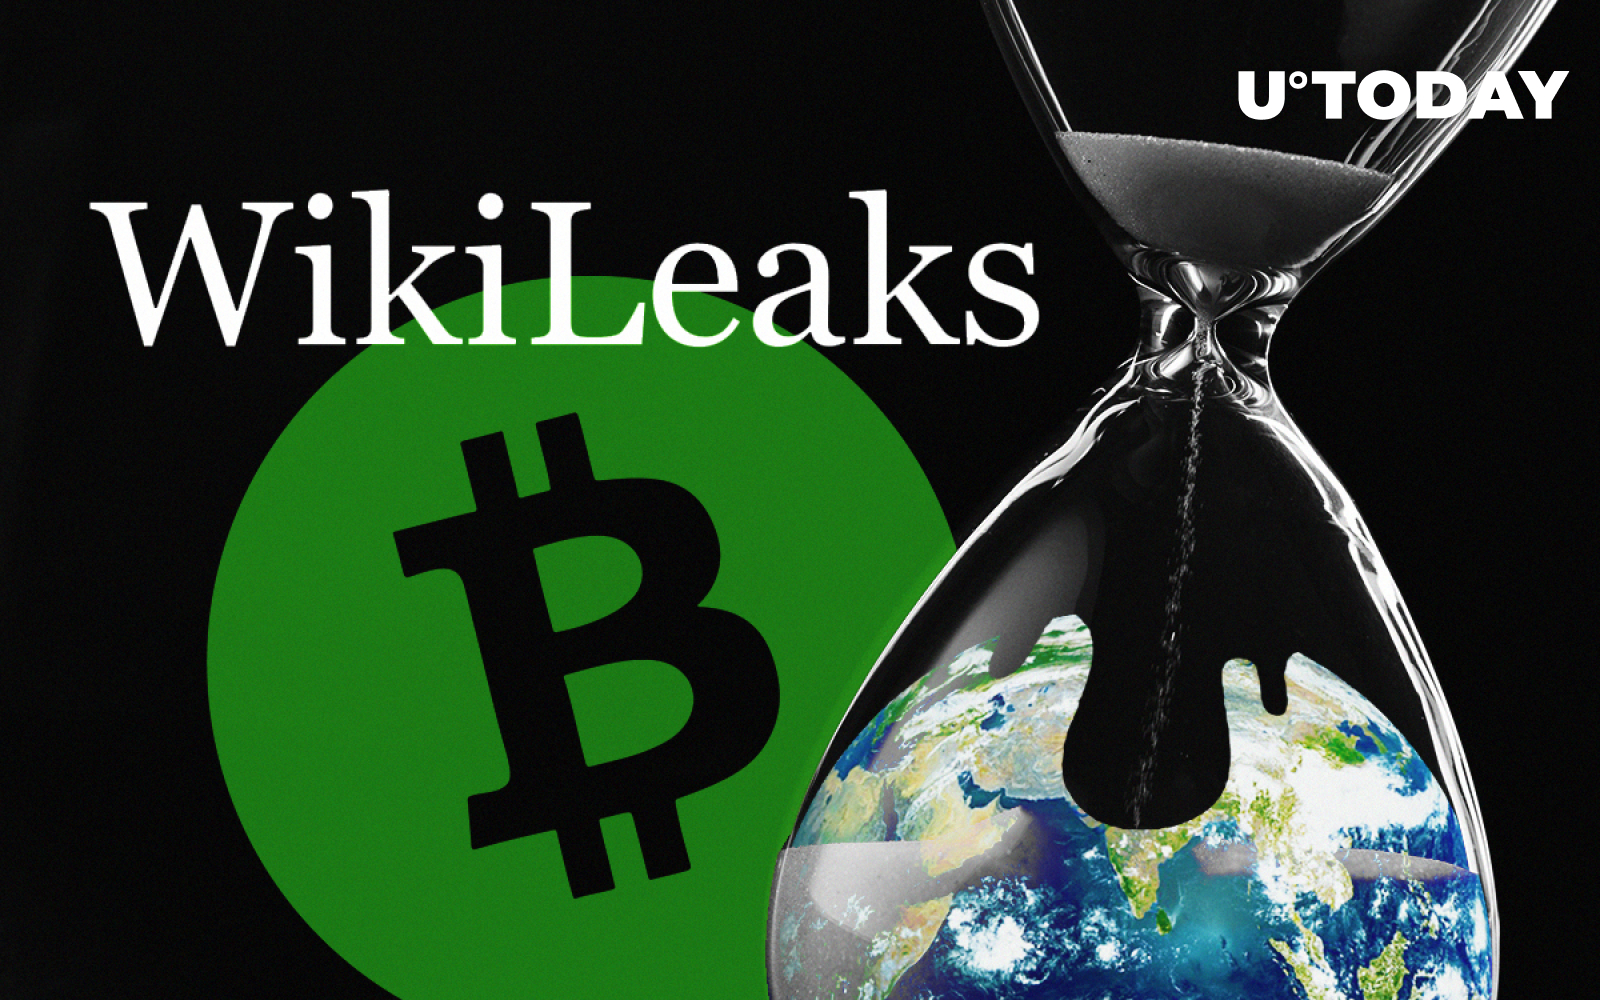 bitcoins wikileaks twitter